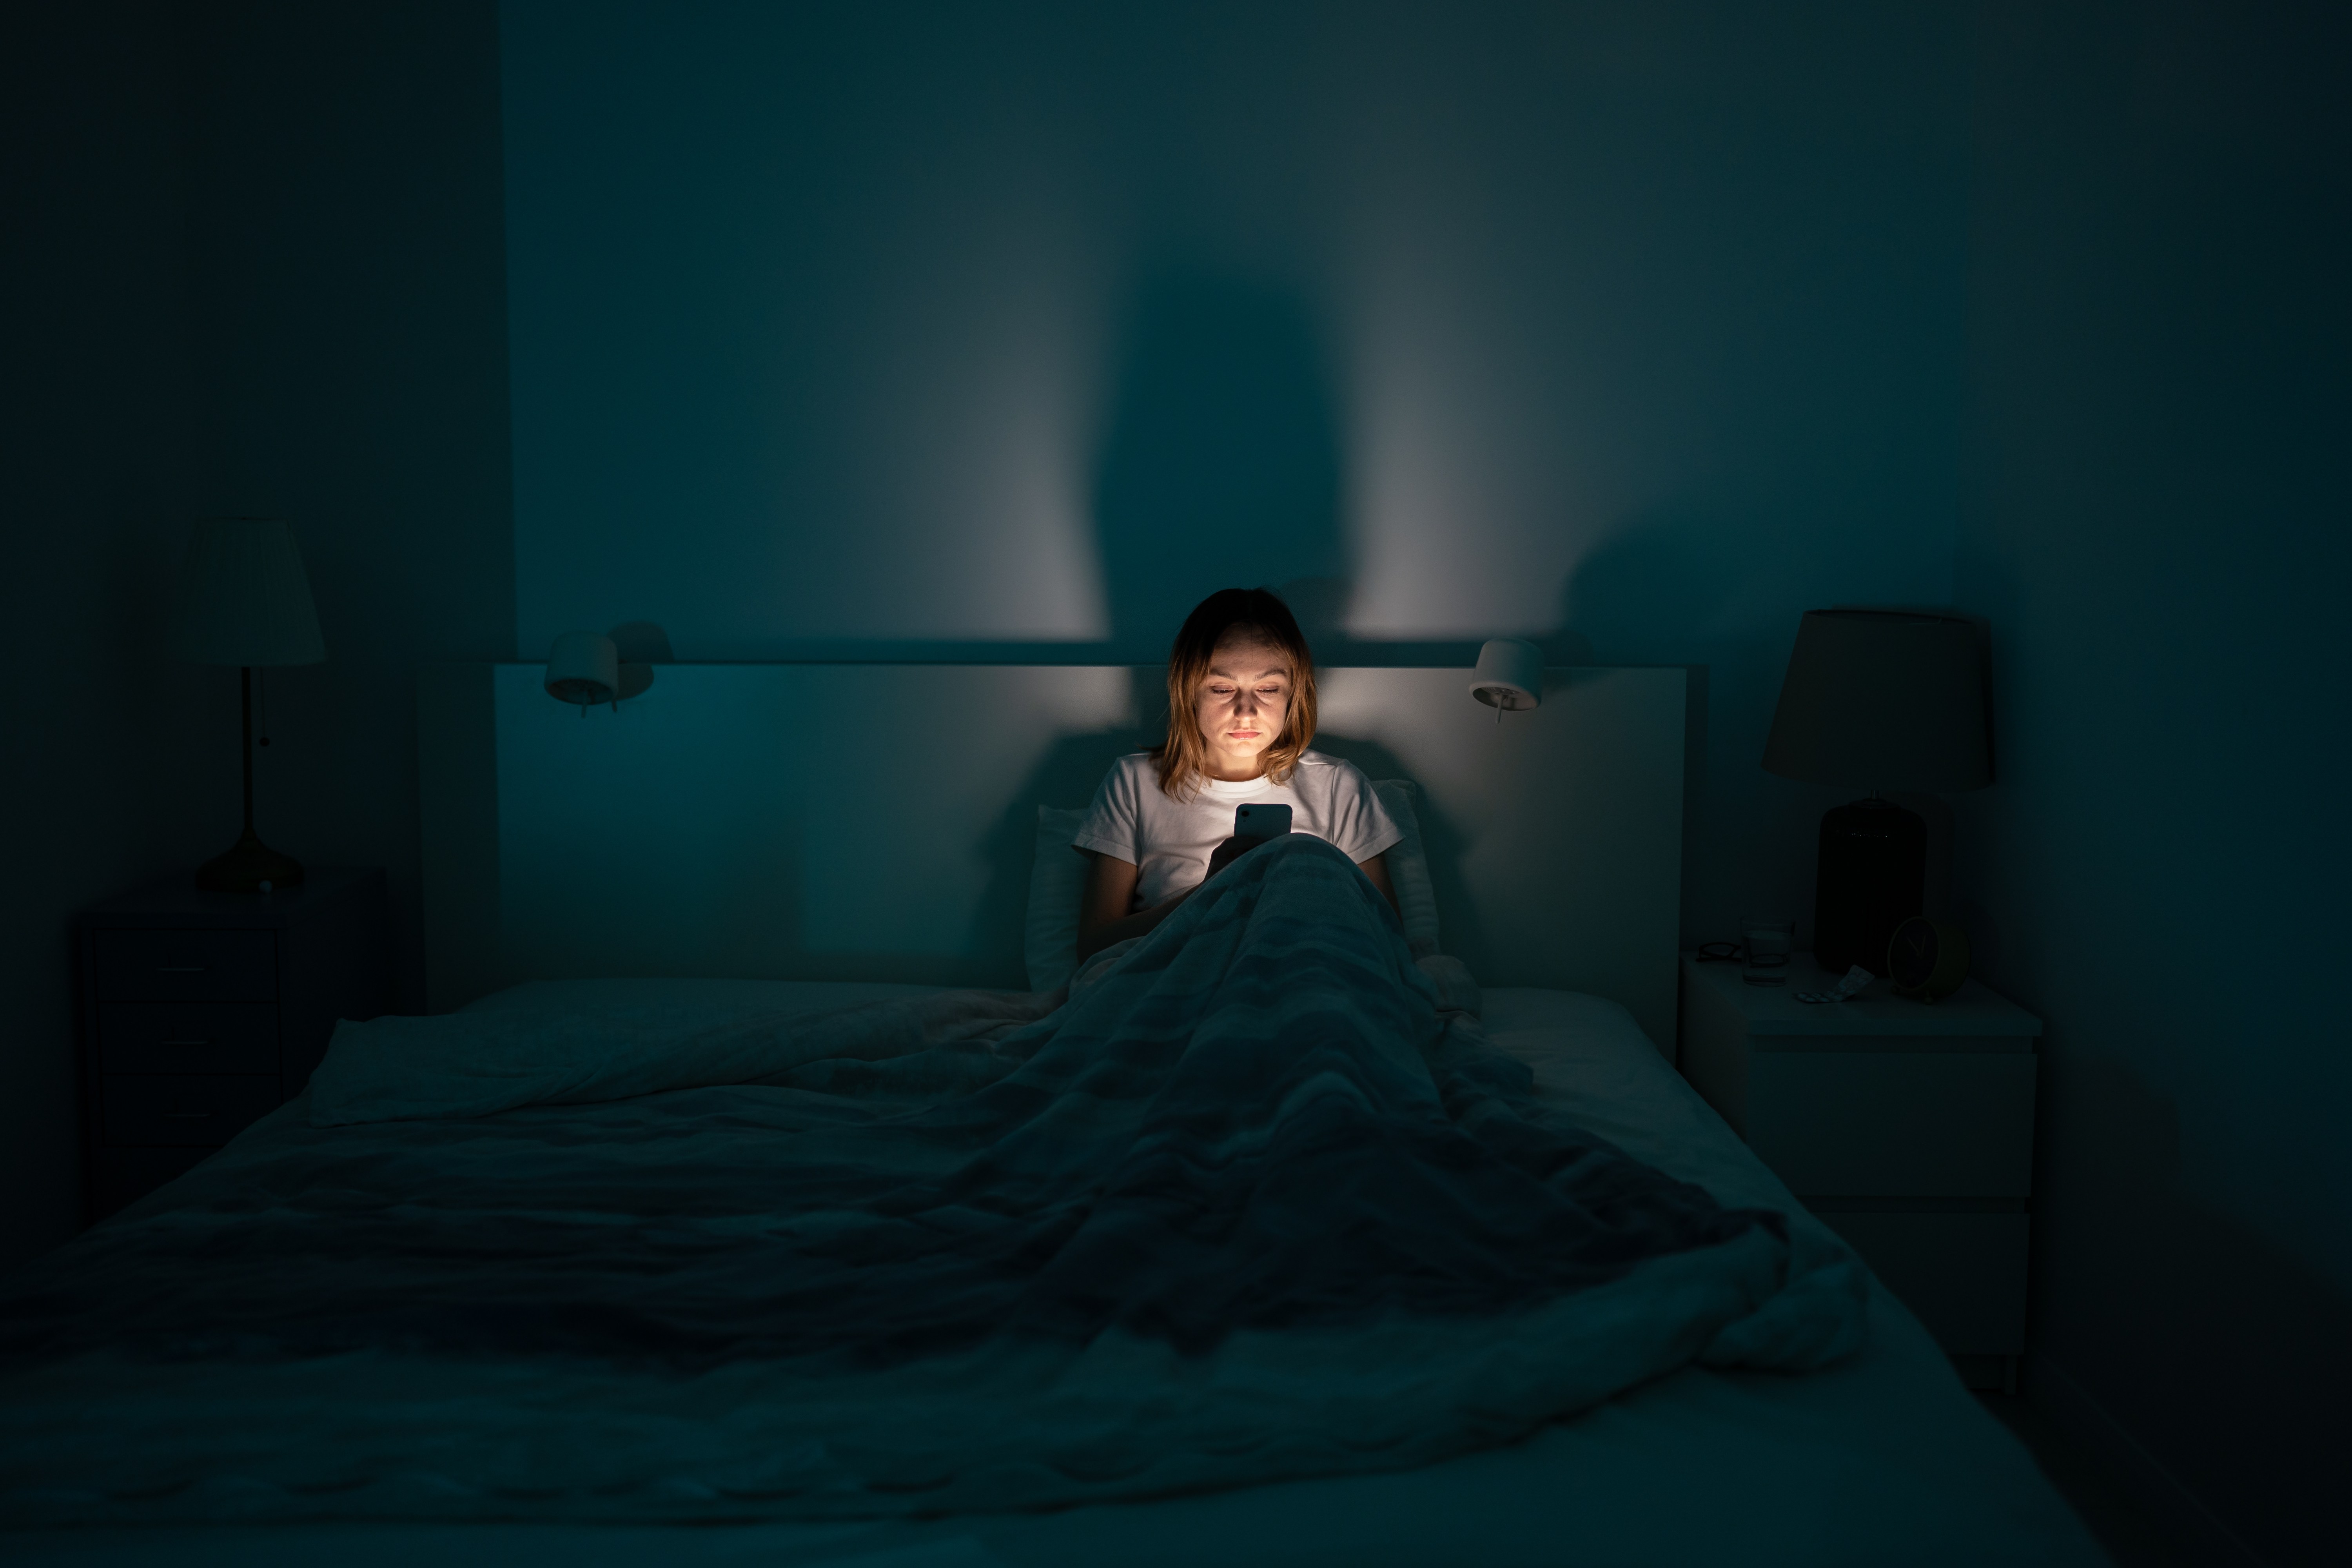 La luz azul de las pantallas disrumpe el ciclo circadiano, provocando dificultades del sueño